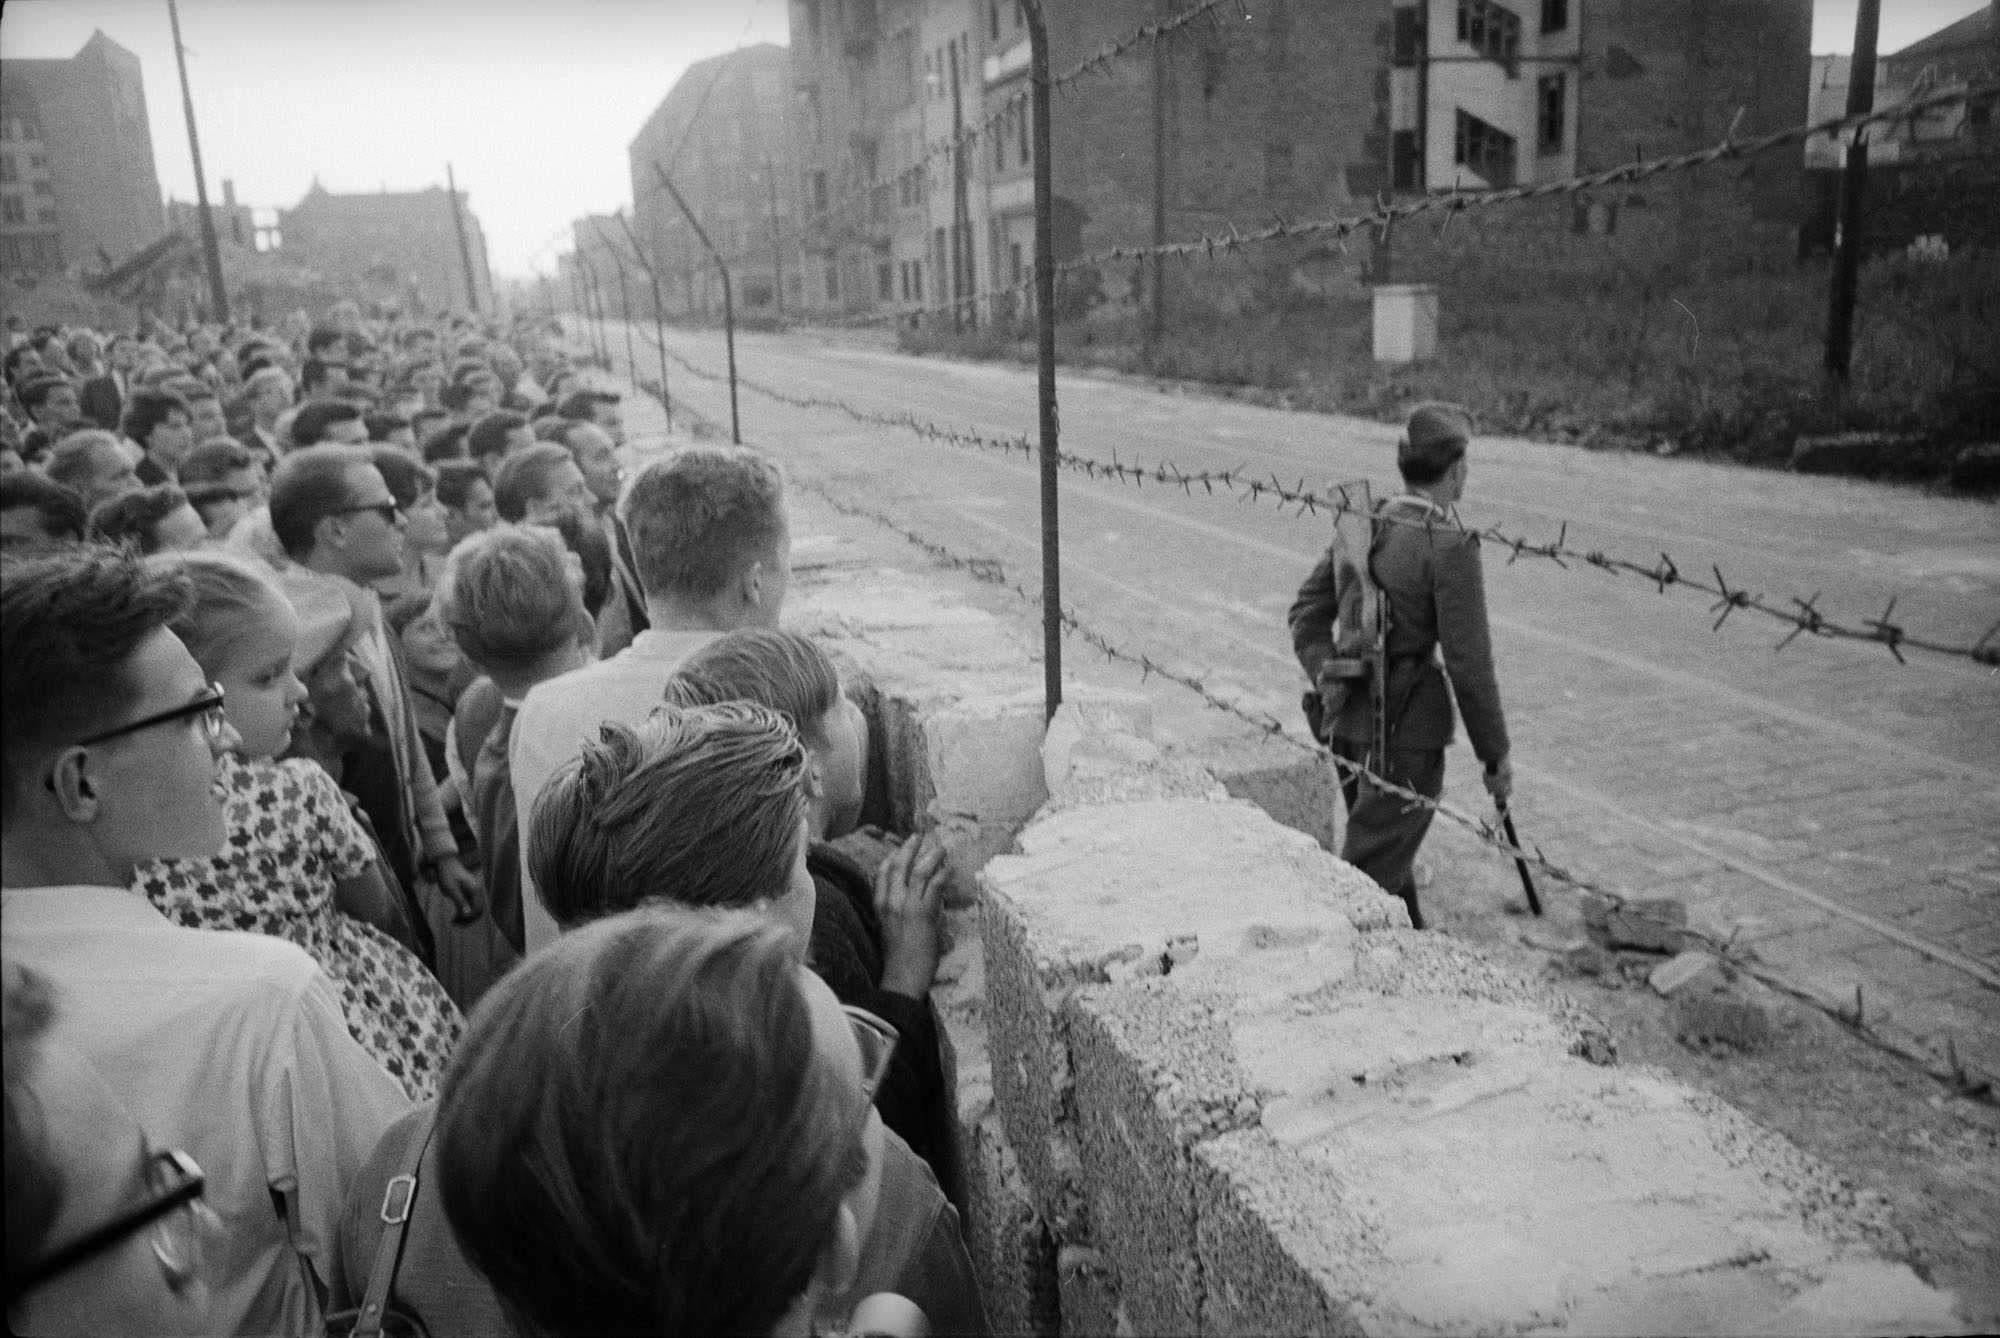 تحریم کالا توسط مردم در دوره پهلوی / خاندان حاکم بر سیاست آمریکا / ساخت دیوار برلین در بحبوحه جنگ سرد / آزادی اسرای متفقین از اردوگاه‌های آلمانی